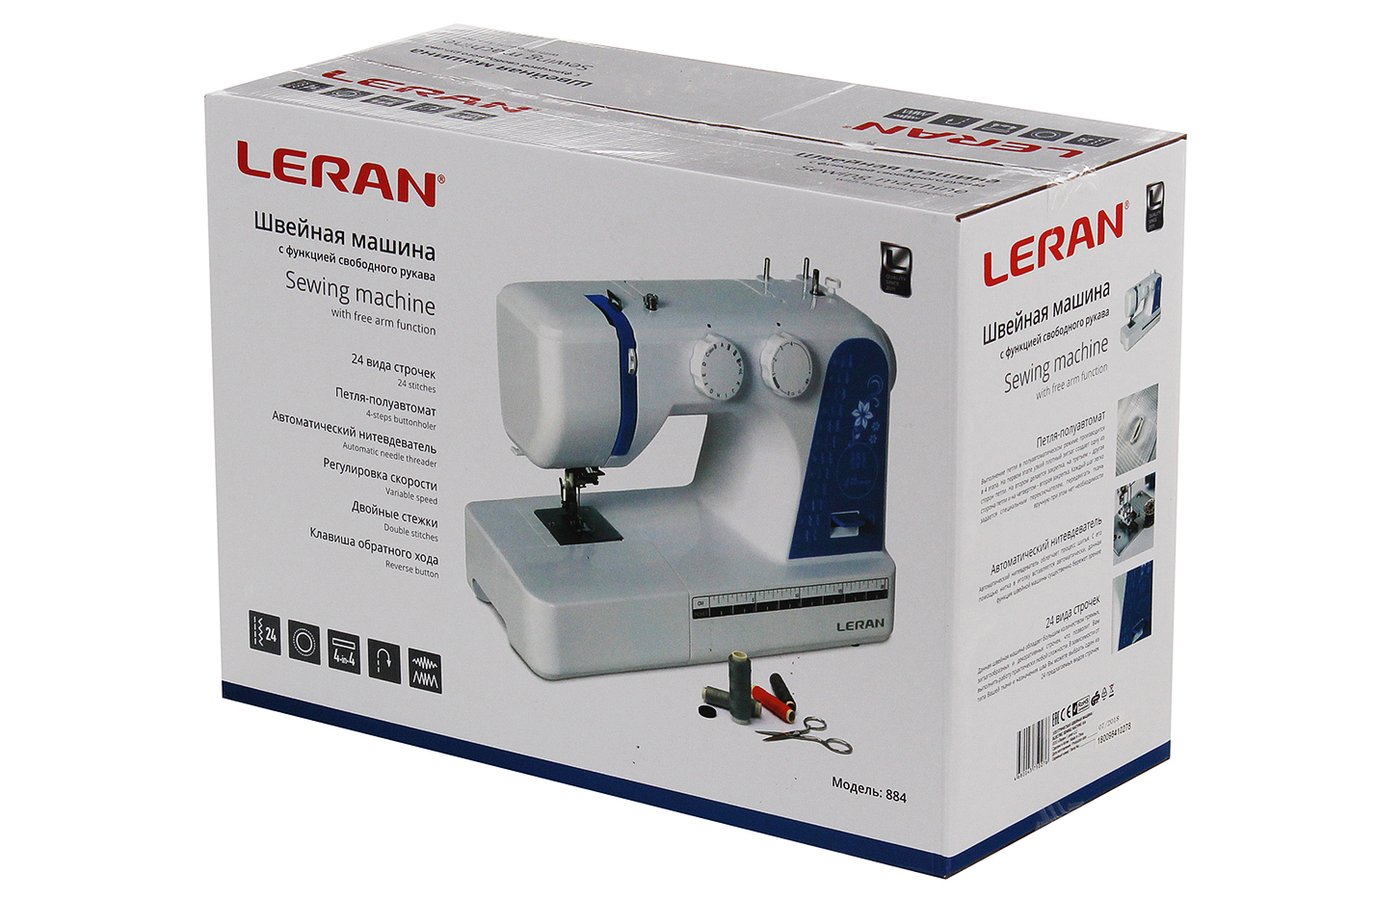 Леран производитель отзывы. Швейная машина Leran 884. Швейная машина Леран модель 884. Леран швейная машина hl_508. Швейная машина Leran FY 930.